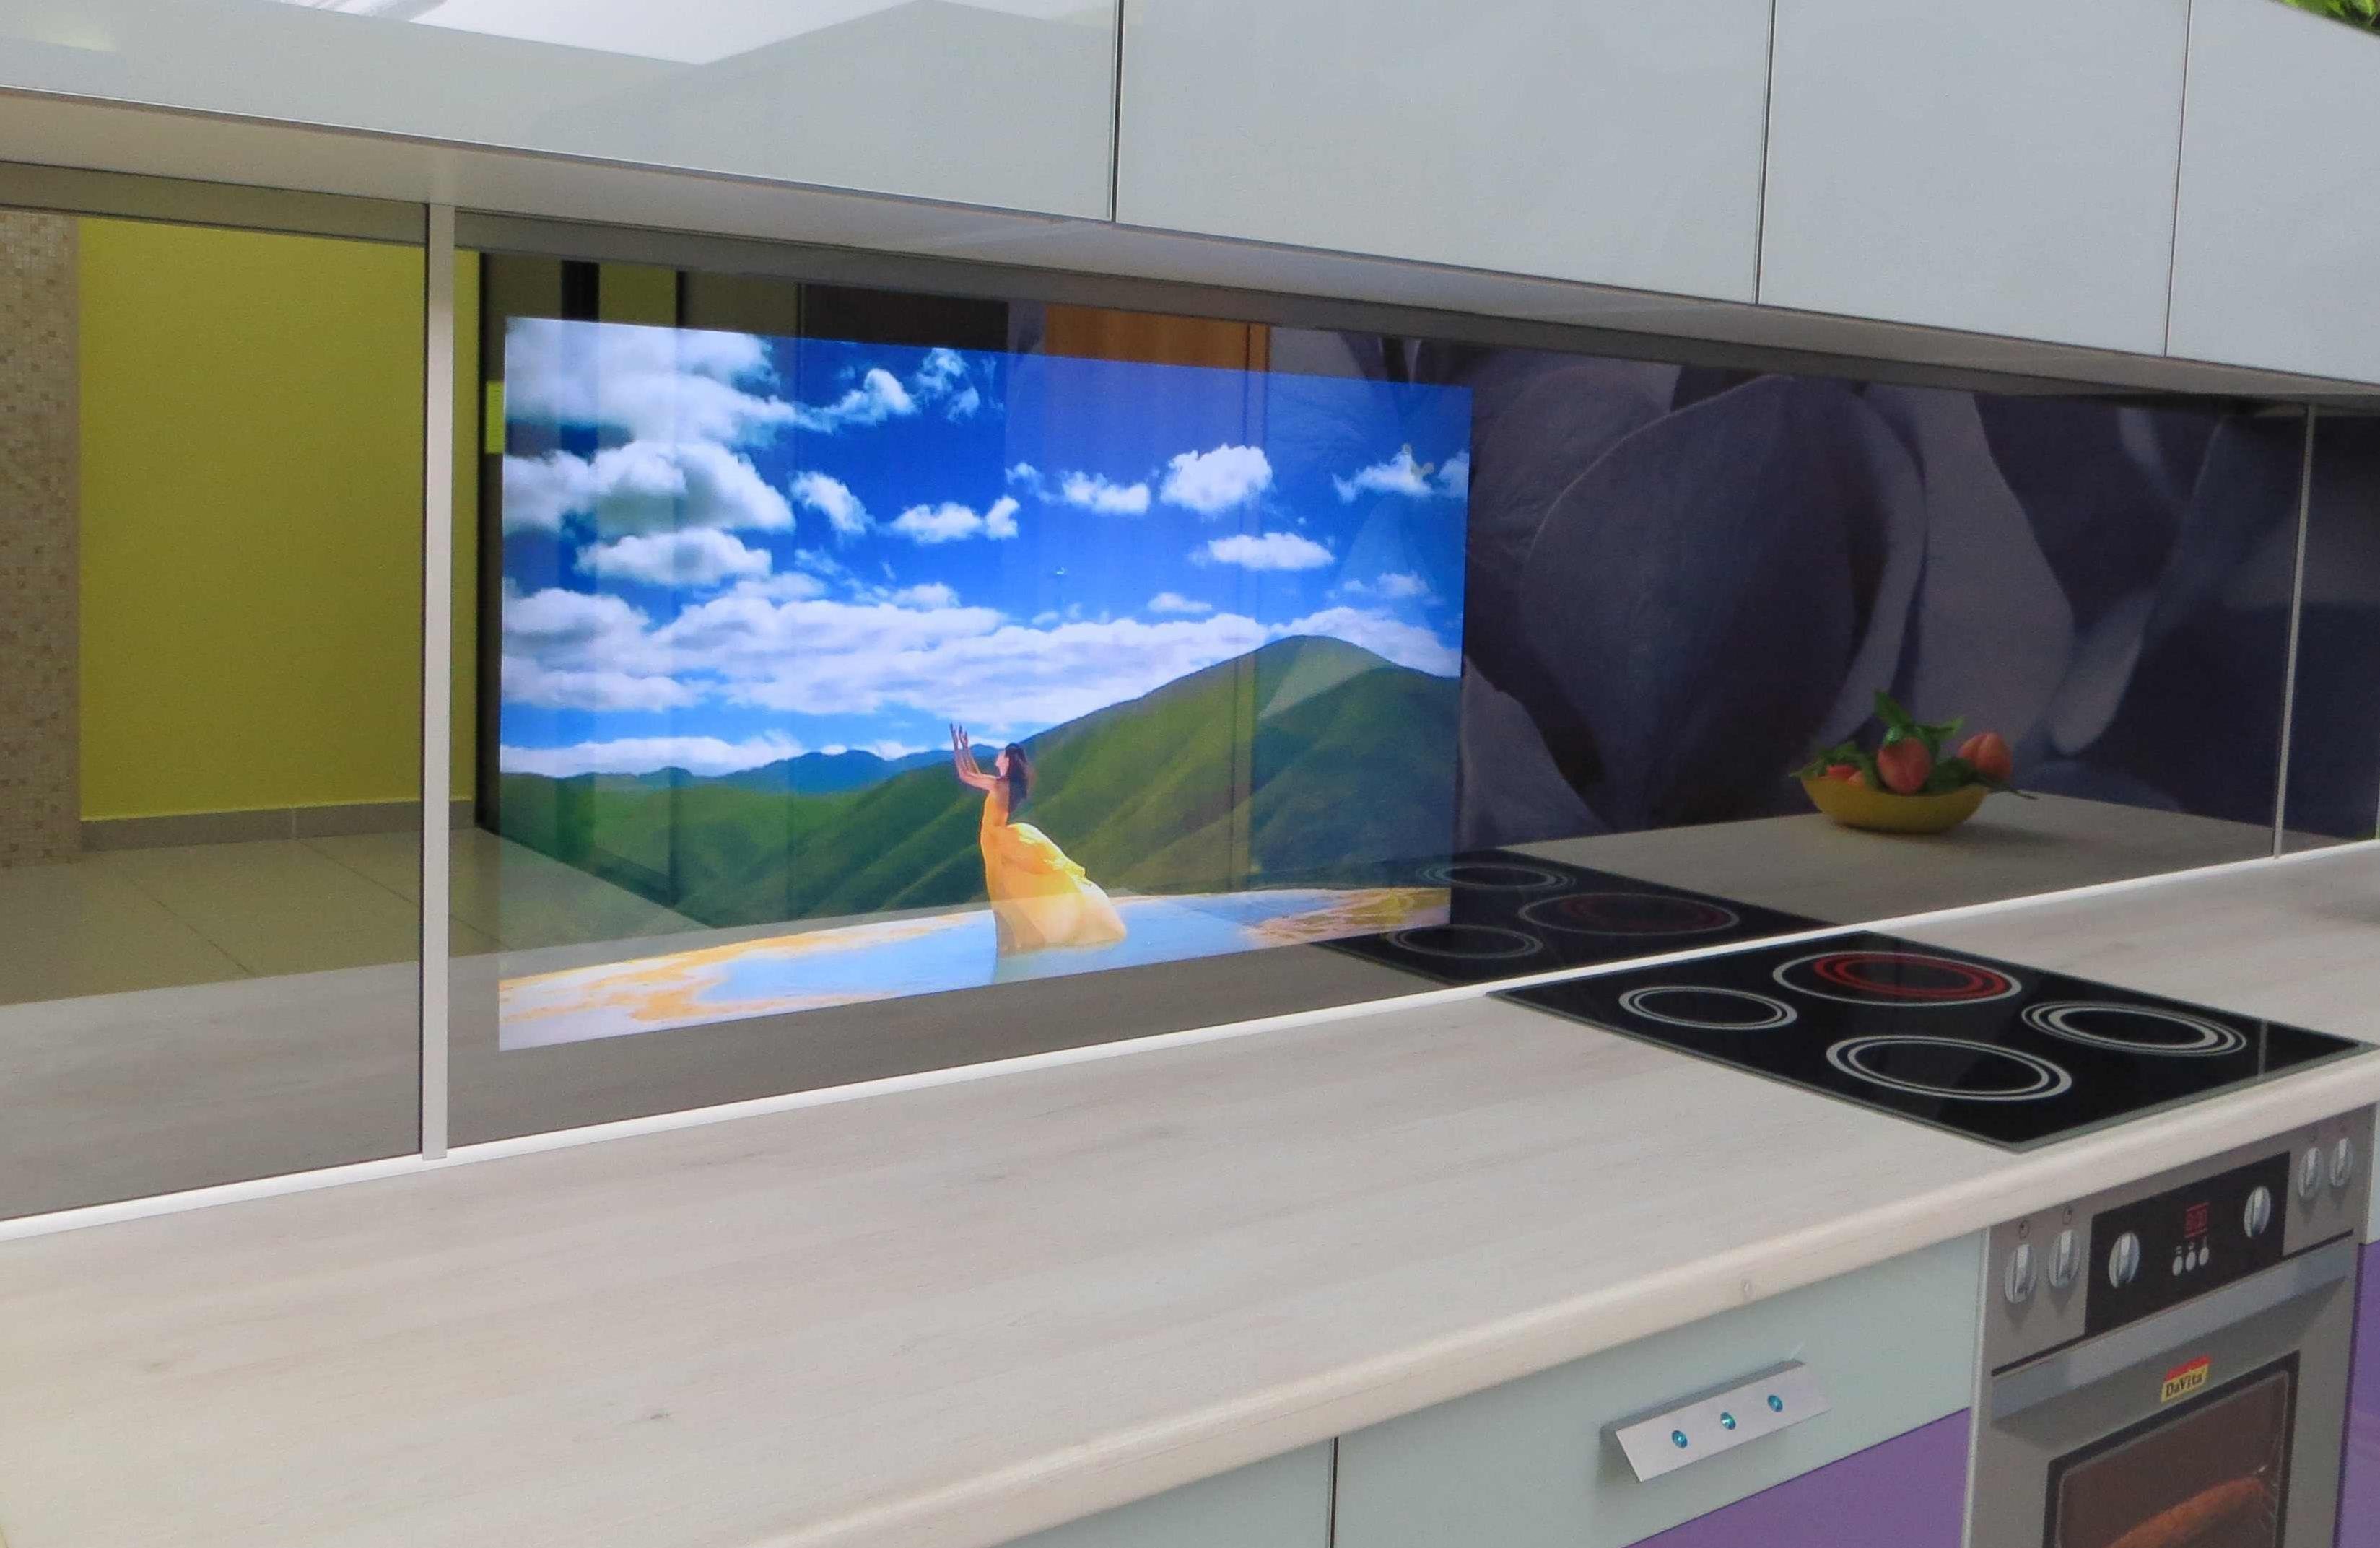 Встроенные кухонные телевизоры. Телевизор в фартуке кухни встроенный. Телевизор встроен в кухонный фартук. Телевизор в кухонном фасаде. Встроенный телевизор в кухонный фартук.